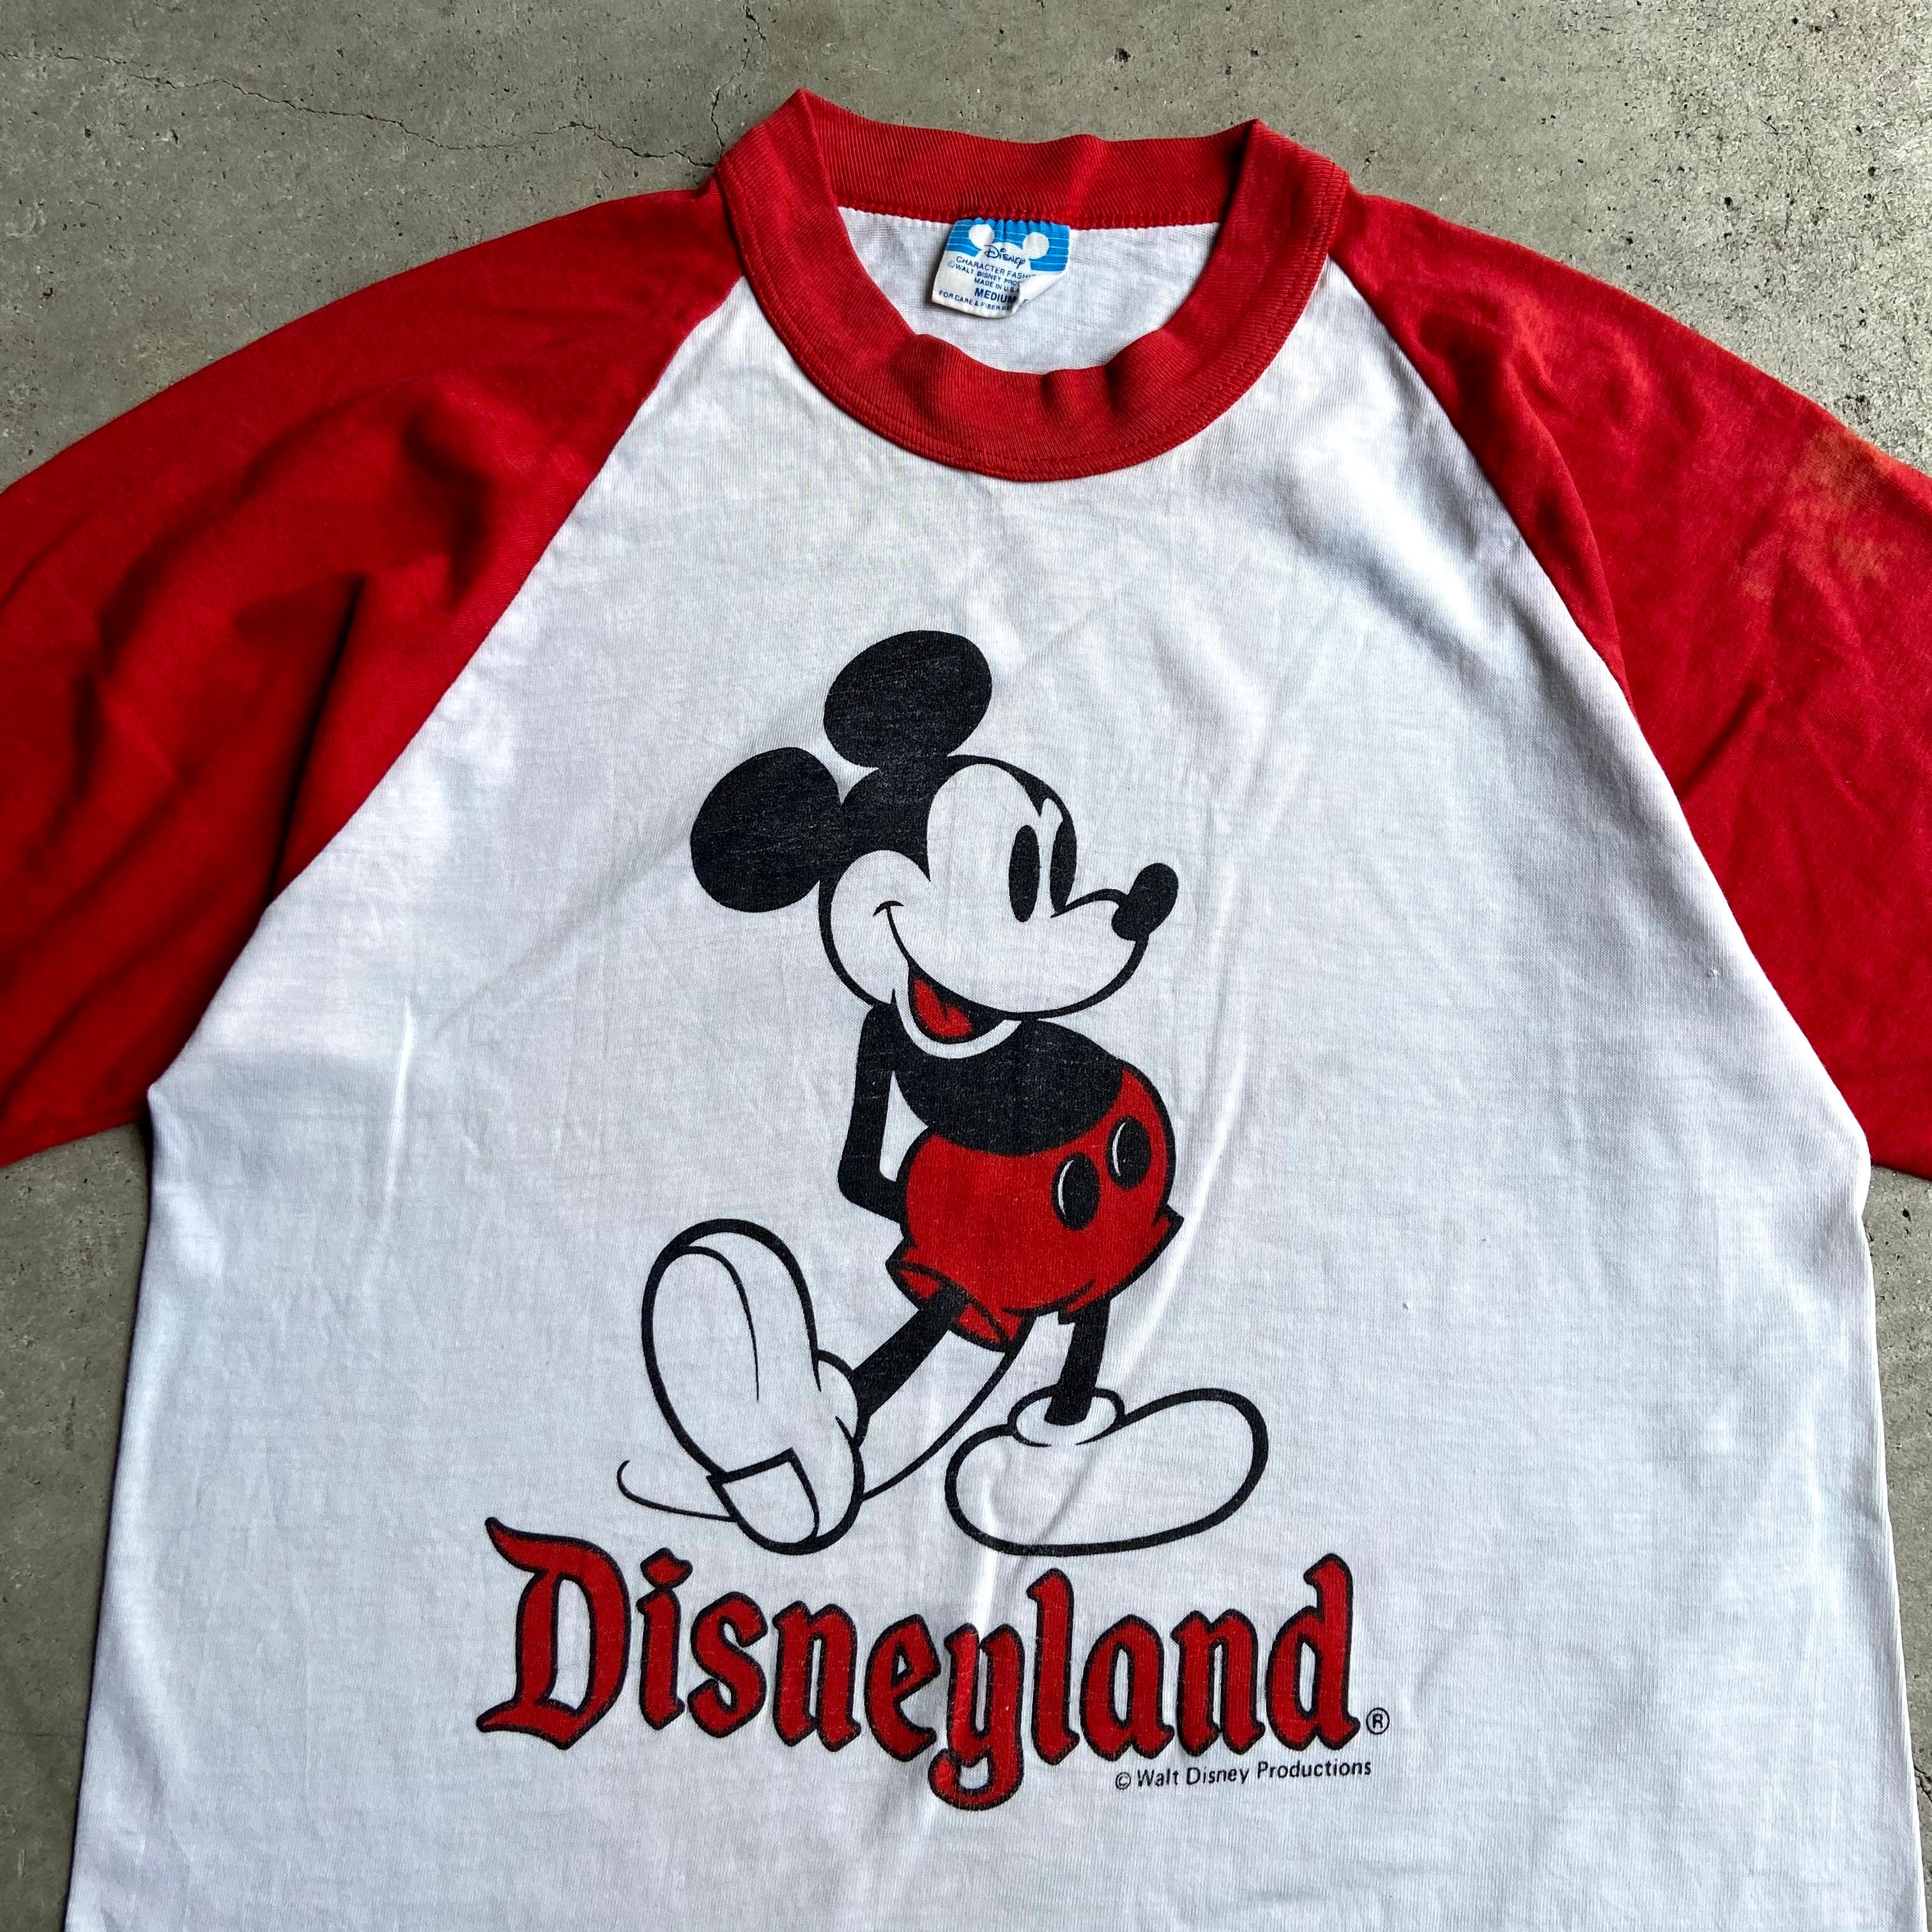 80年代 Disney ディズニー ミッキーマウス キャラクタープリント ラグランtシャツ メンズm レディースl相当 古着 80s ヴィンテージ ビンテージ Mickey Mouse レッド ホワイト 赤色 白 Tシャツ Sa Cave 古着屋 公式 古着通販サイト